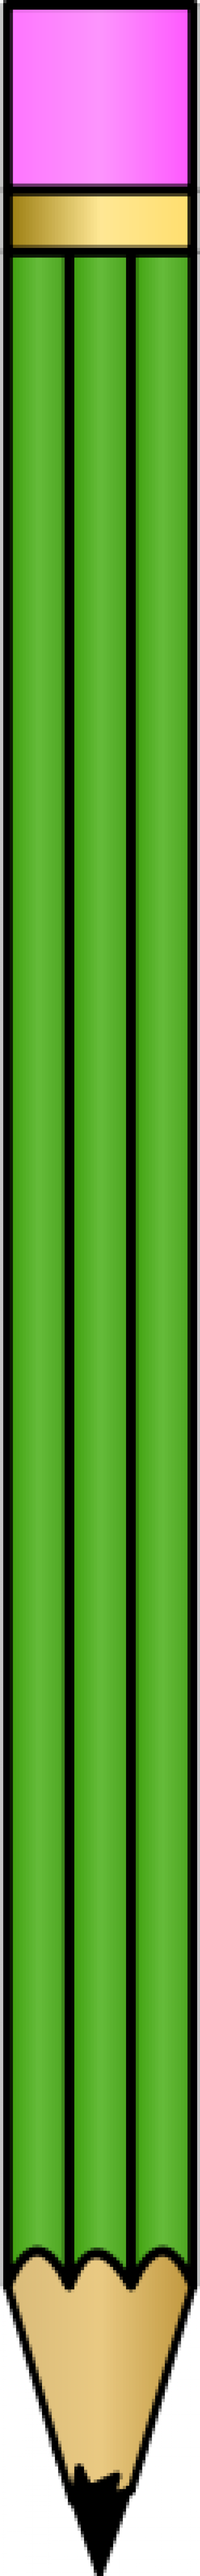 Green pencil-1572960442